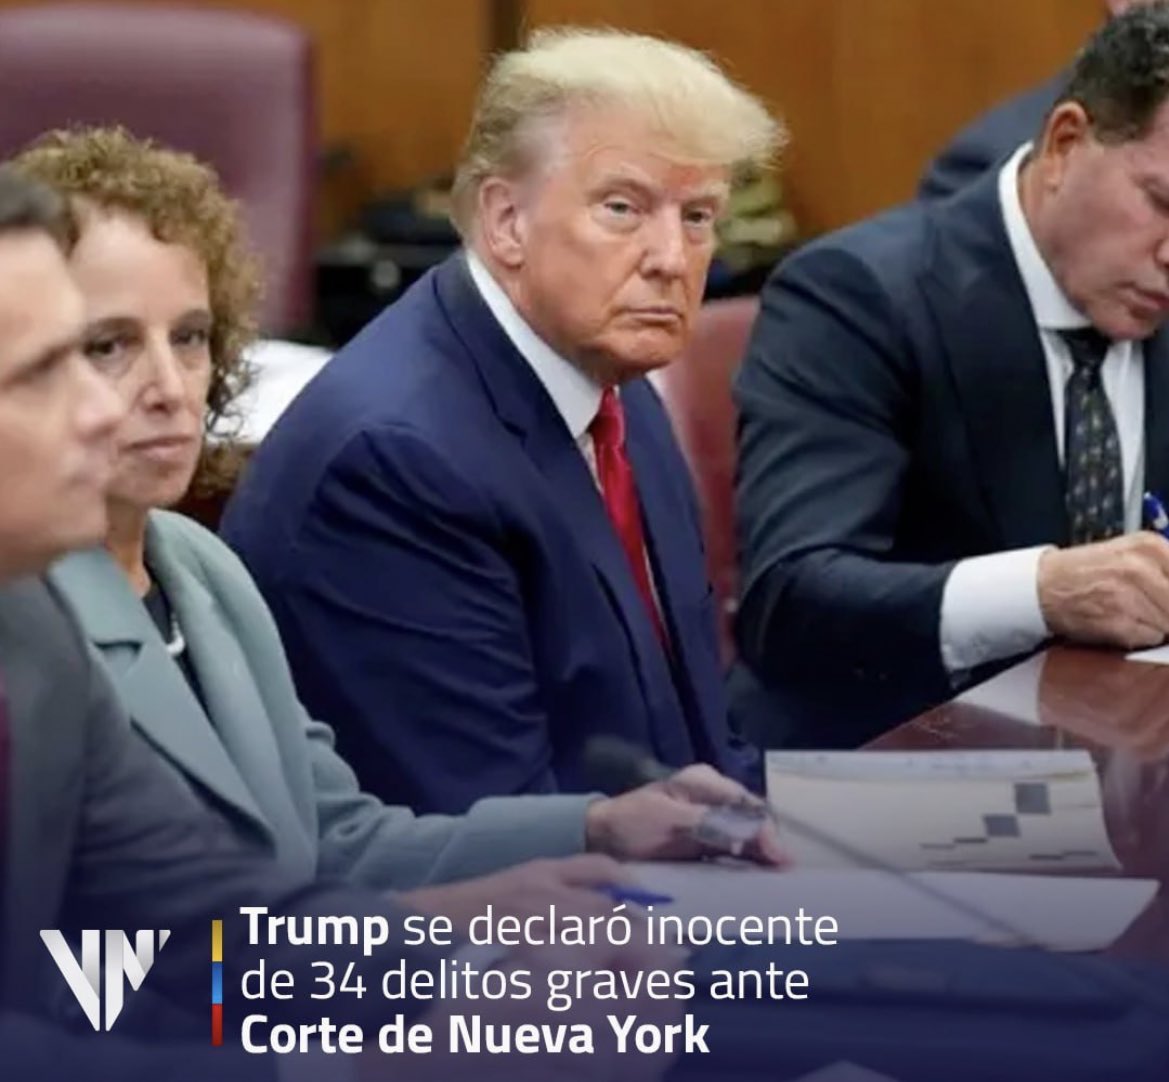 La imagen del día, el expresidente Donald Trump bajo arresto en la corte de Nueva York de EEUU. Trump iba por Maduro y terminó cavando su propia tumba